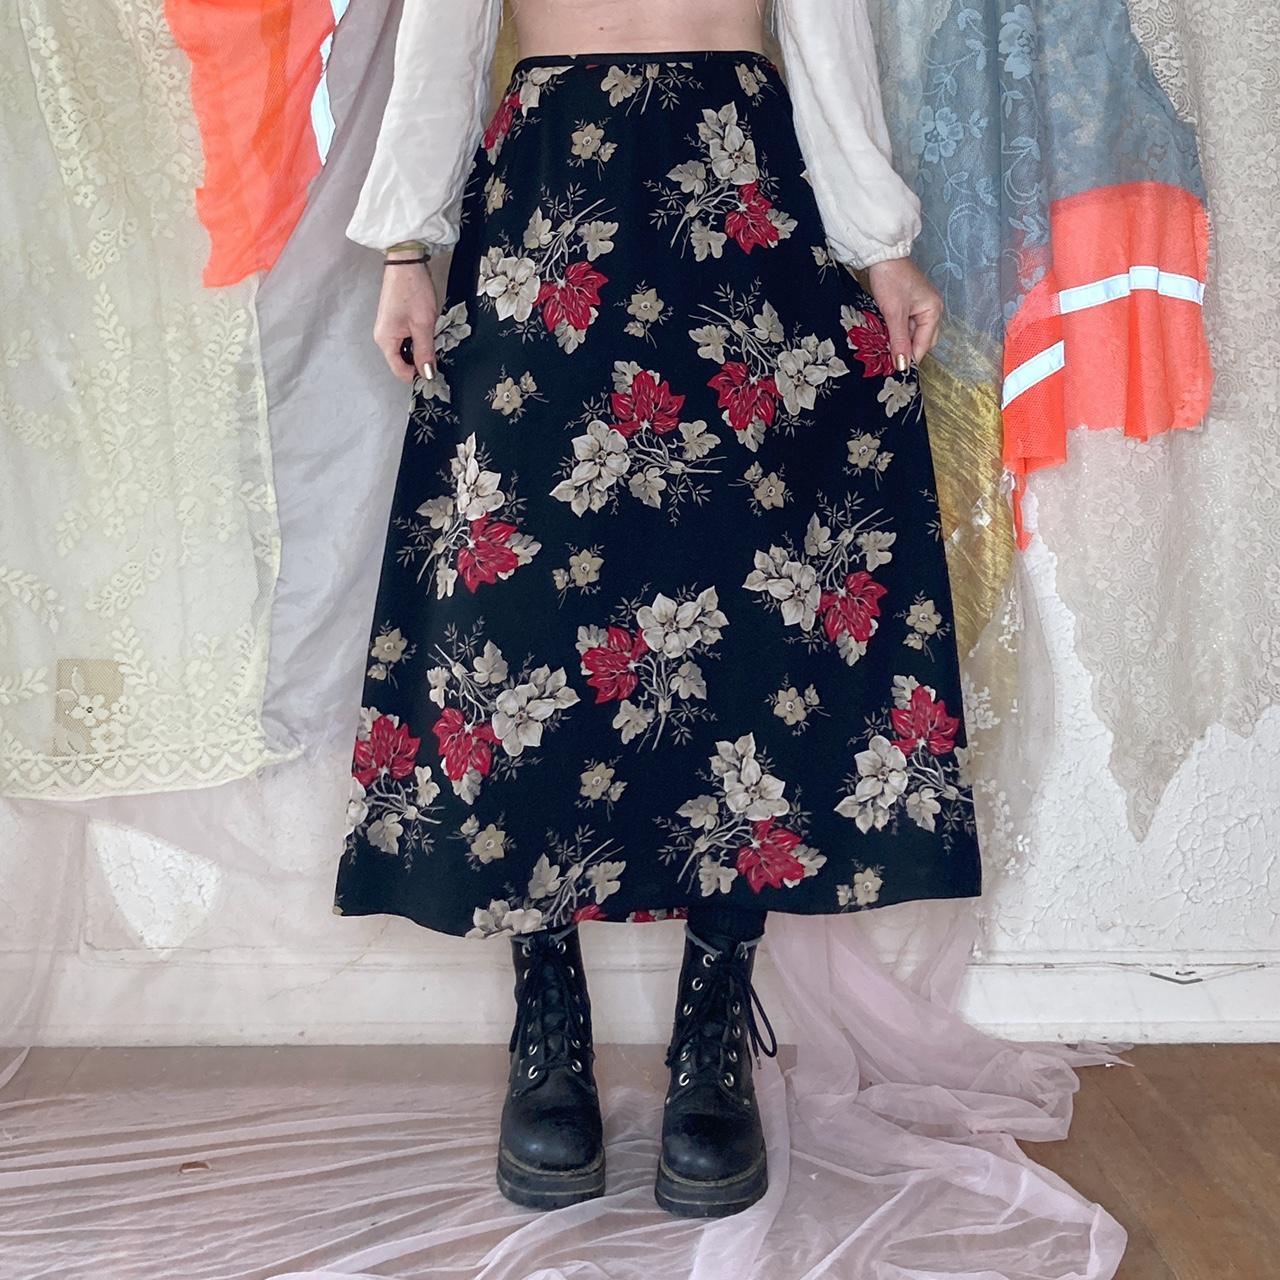 y2k vintage black floral skirt. 🖤 Brand: Chaus Vtg... - Depop